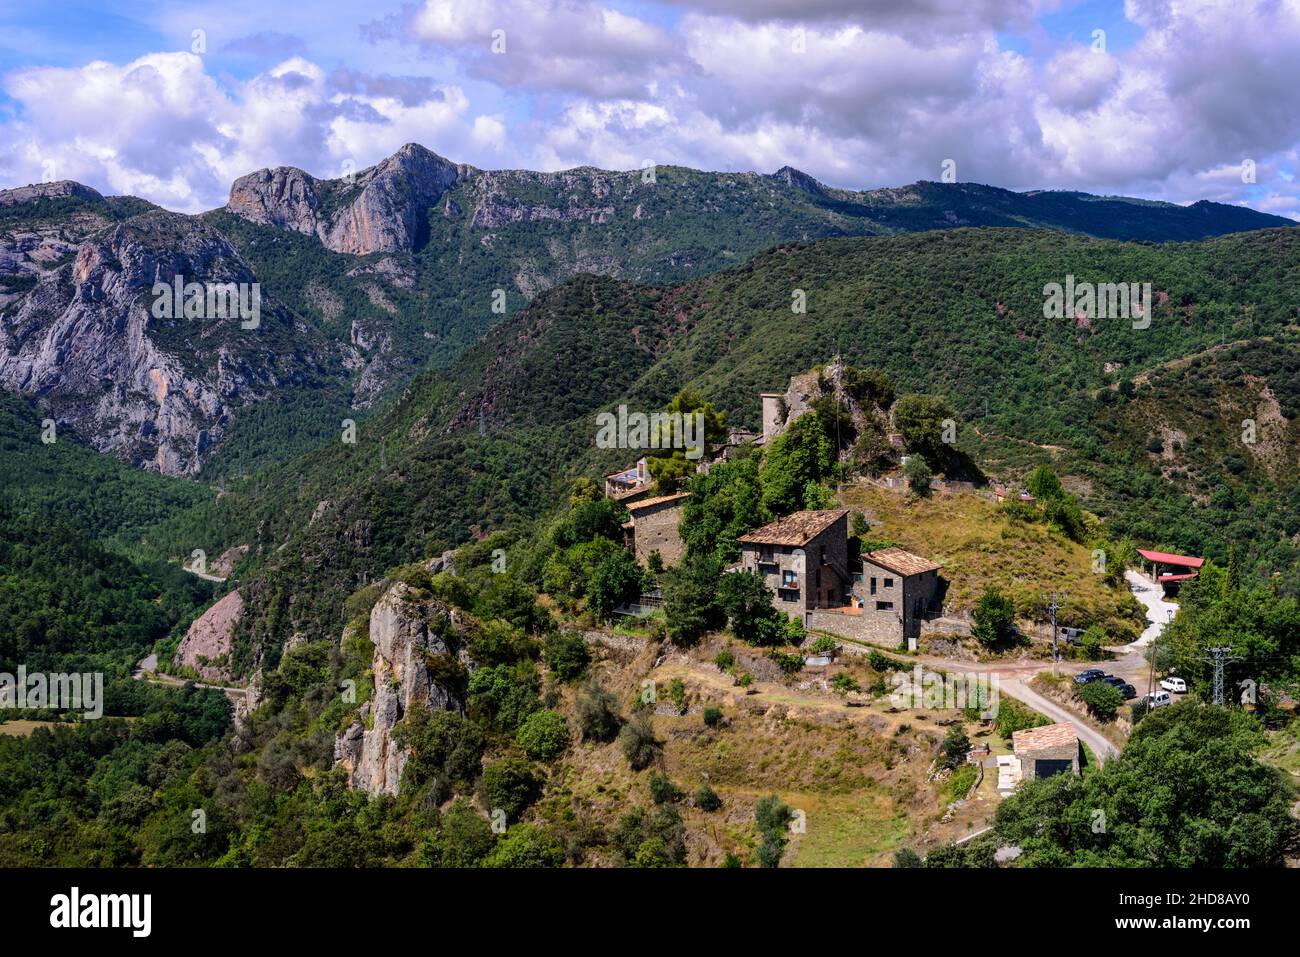 Idyllic mountain village in the spanish pyrenees, Spain Stock Photo